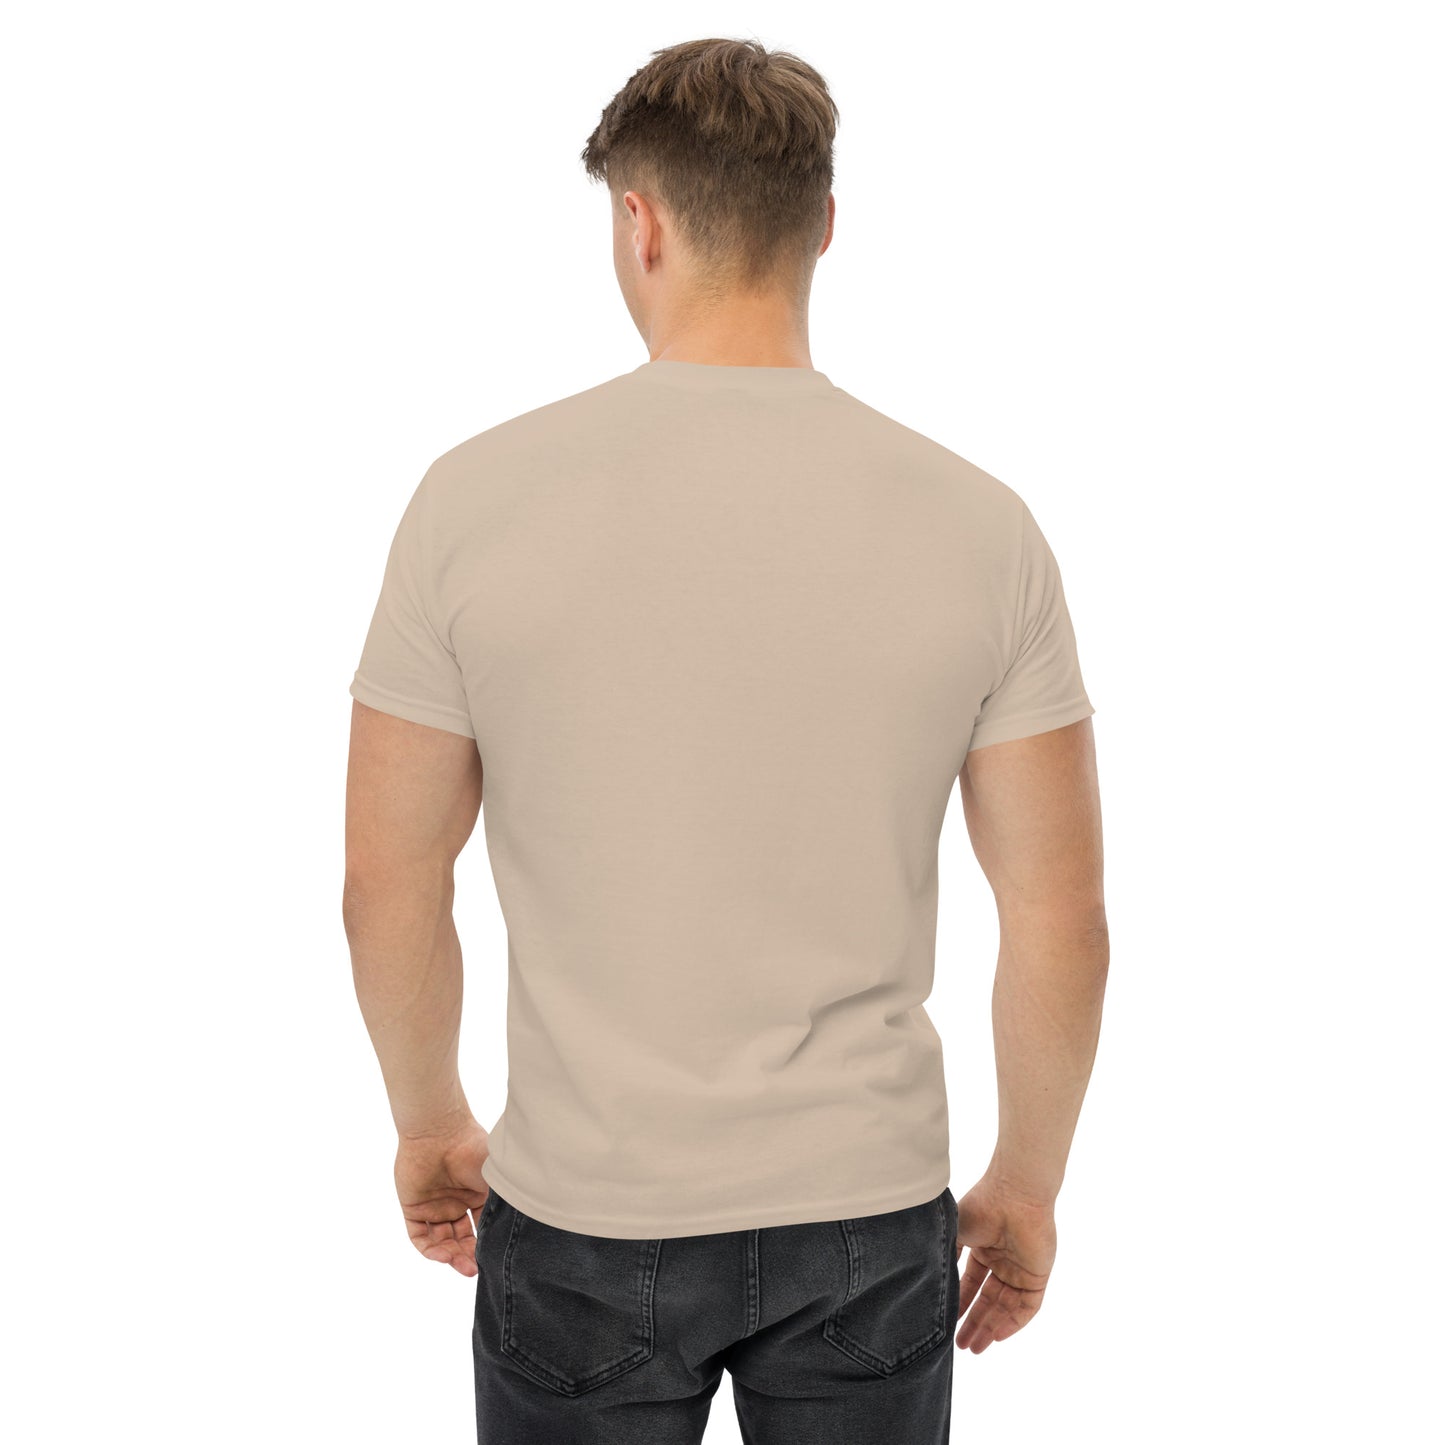 Men's Can-Am T-Shirt